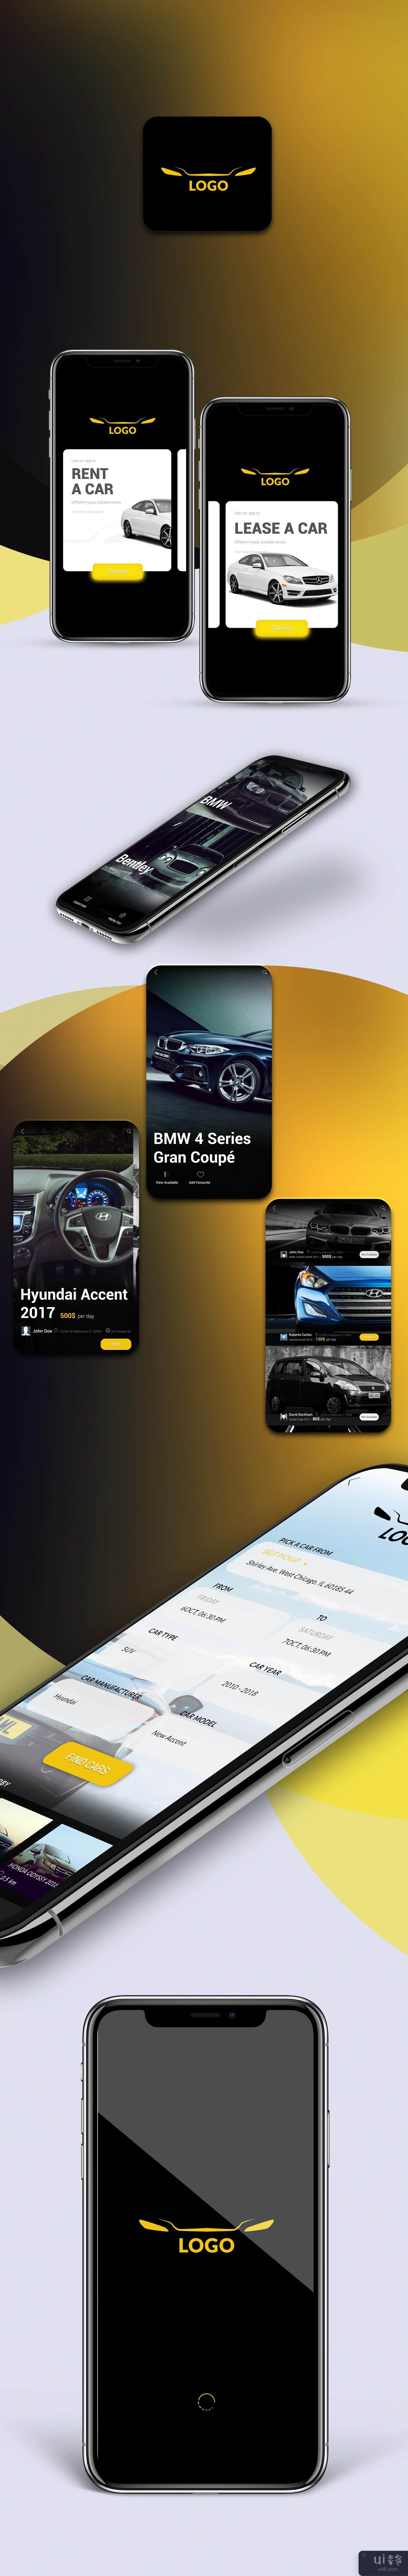 租车应用程序设计(Car Rental App Design)插图9